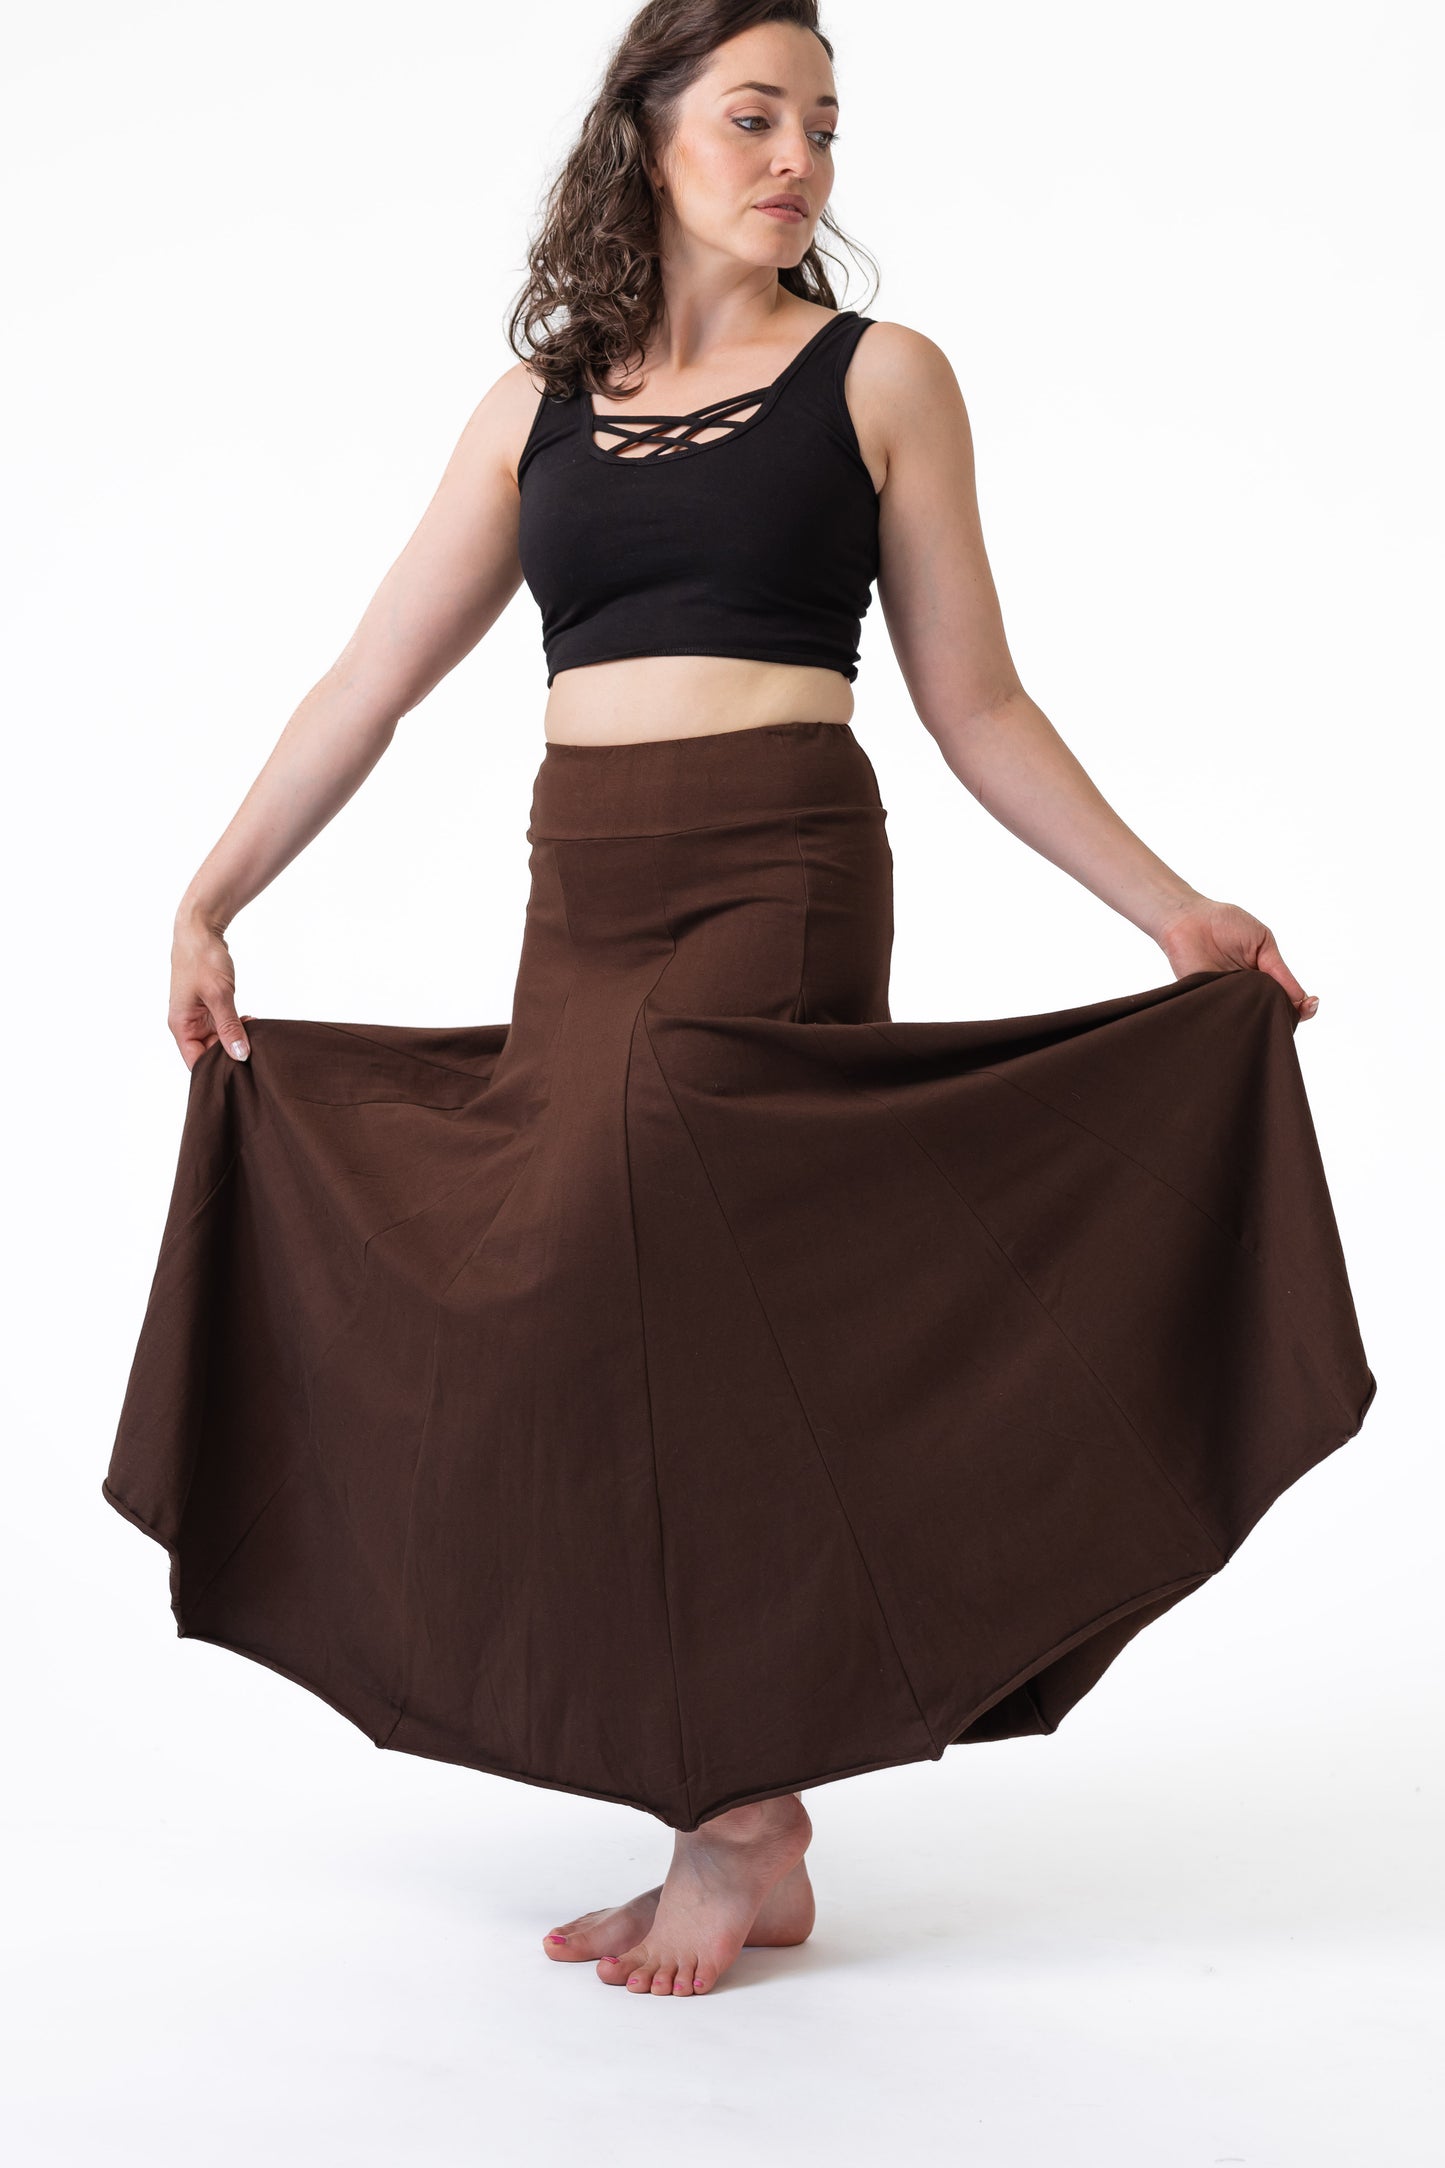 Goddess Maxi Skirt